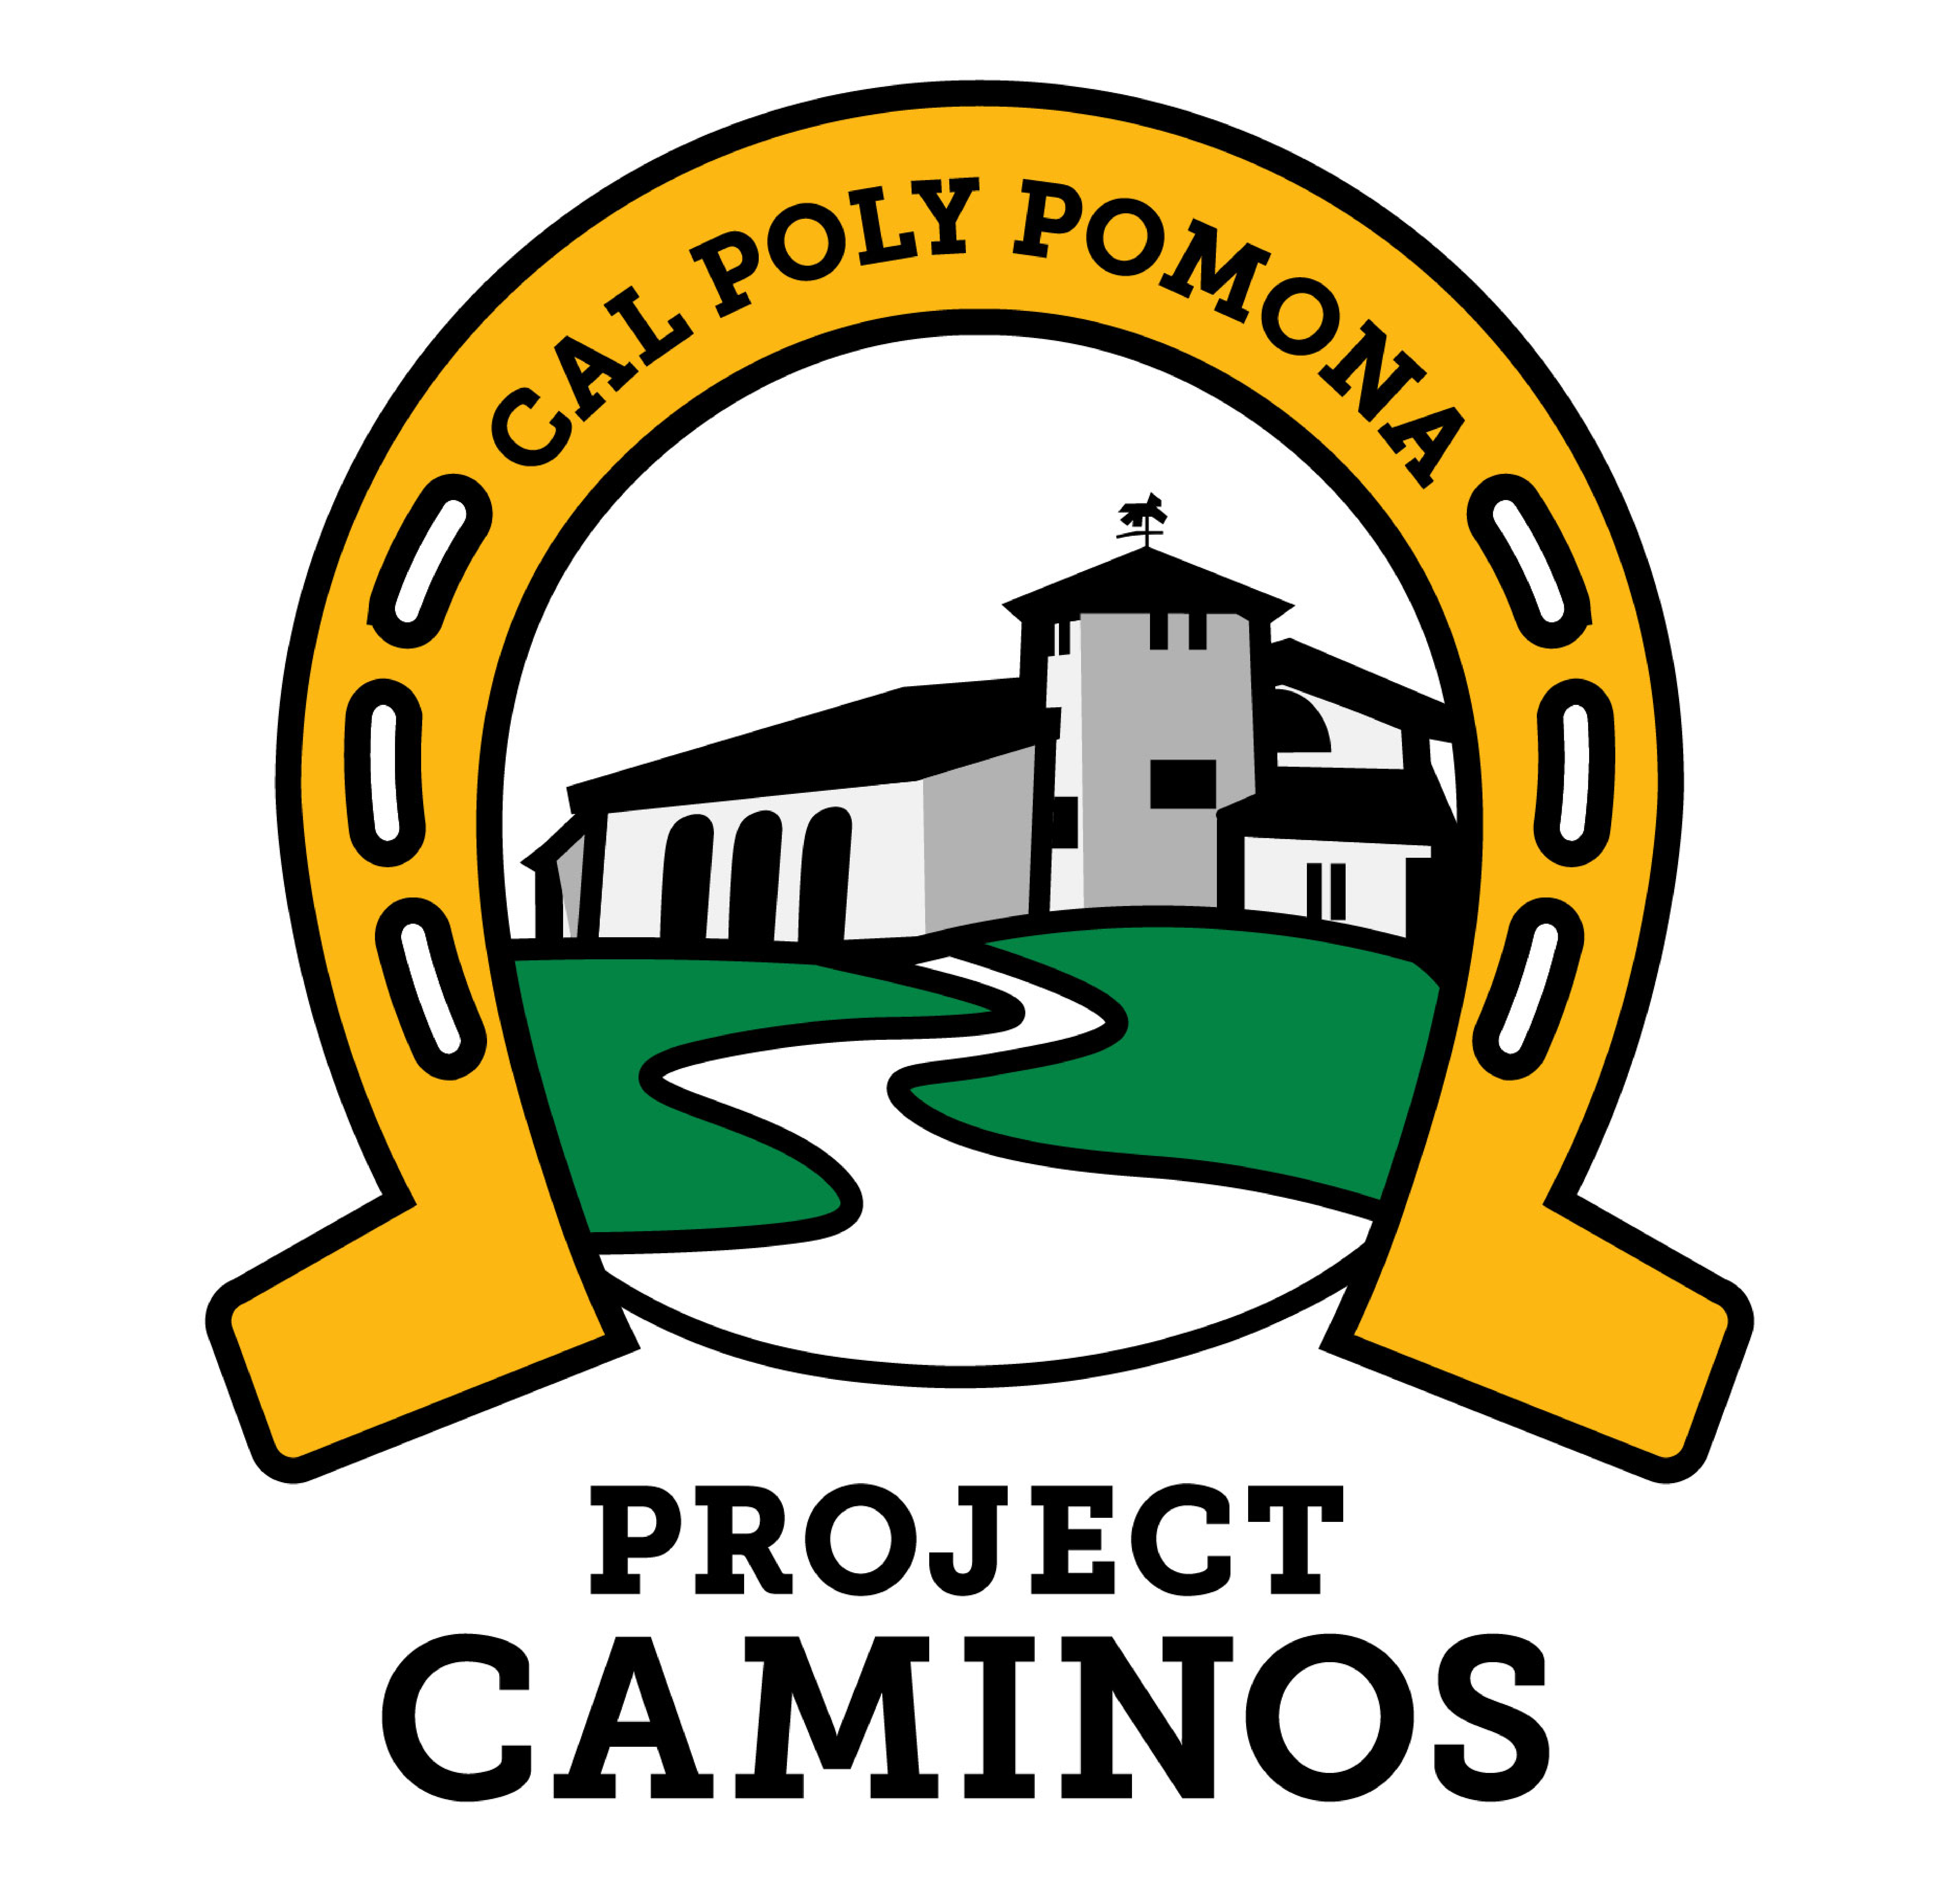 CAMINOS logo